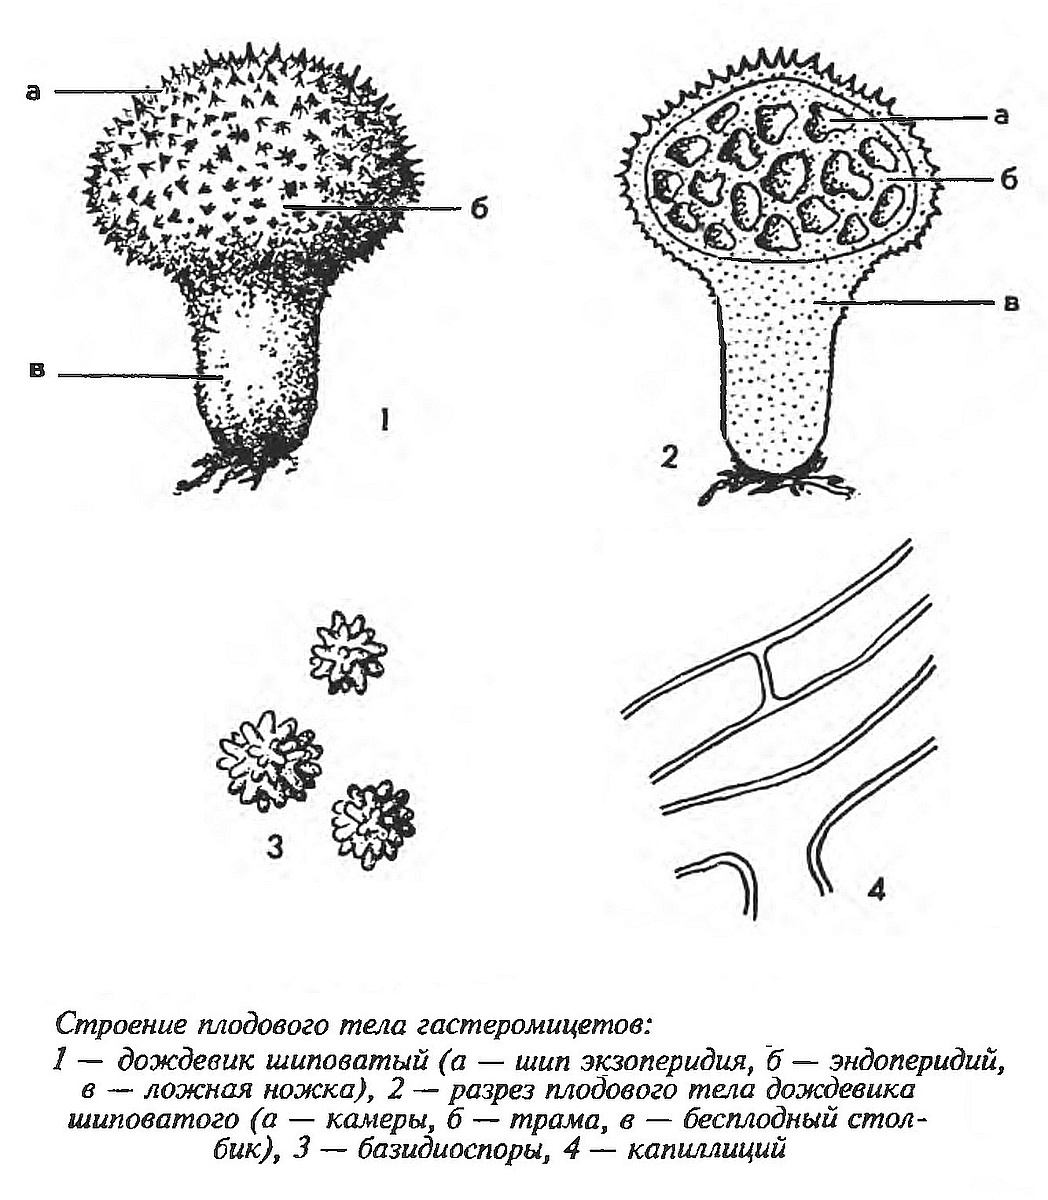 Дождевик настоящий (Lycoperdon perlatum) 2